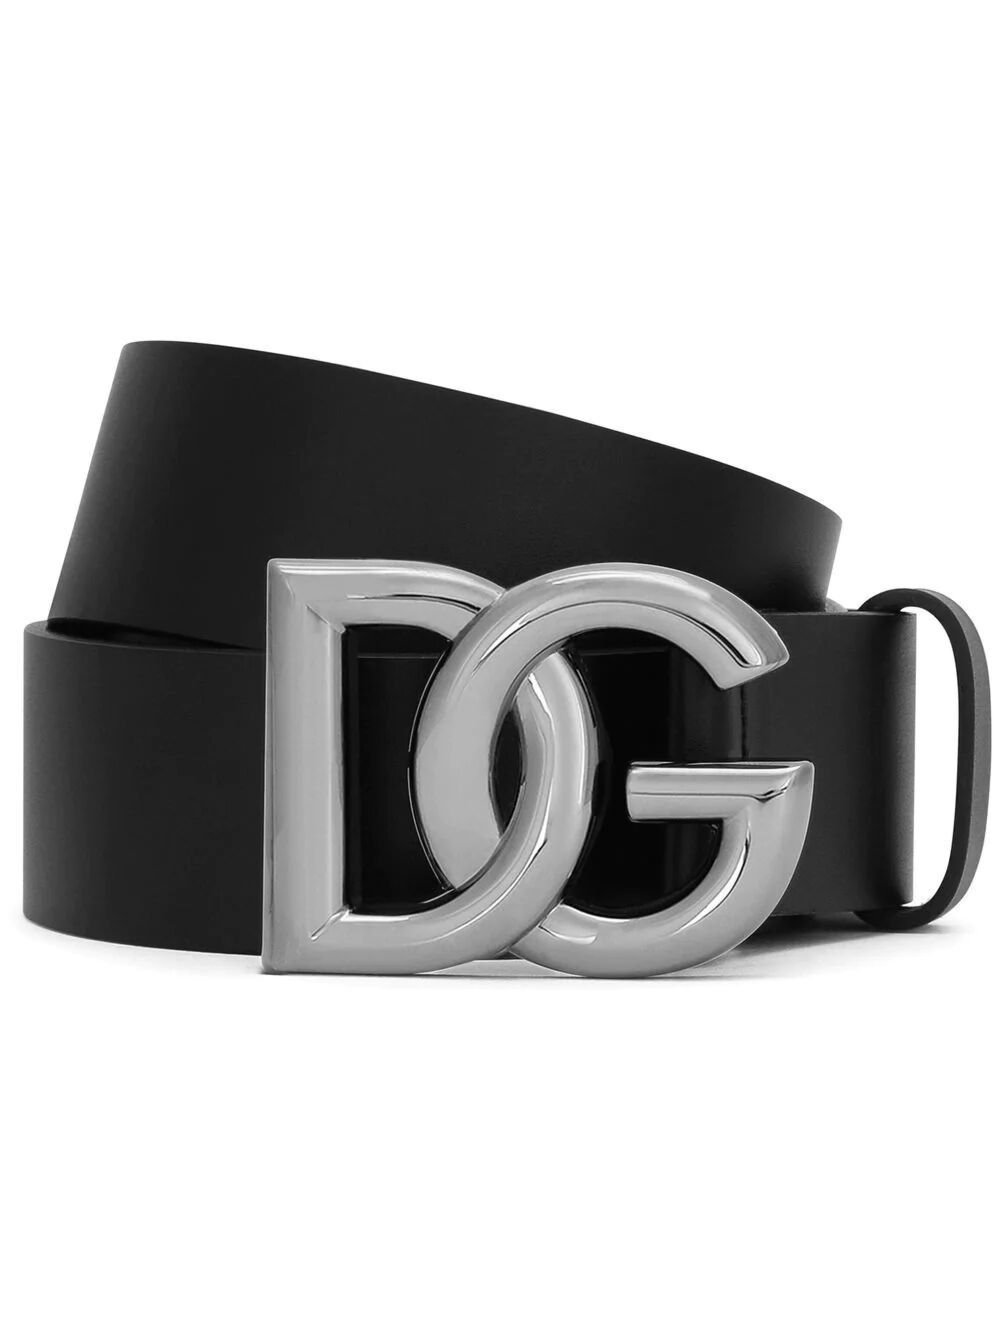 Dg belt - 1